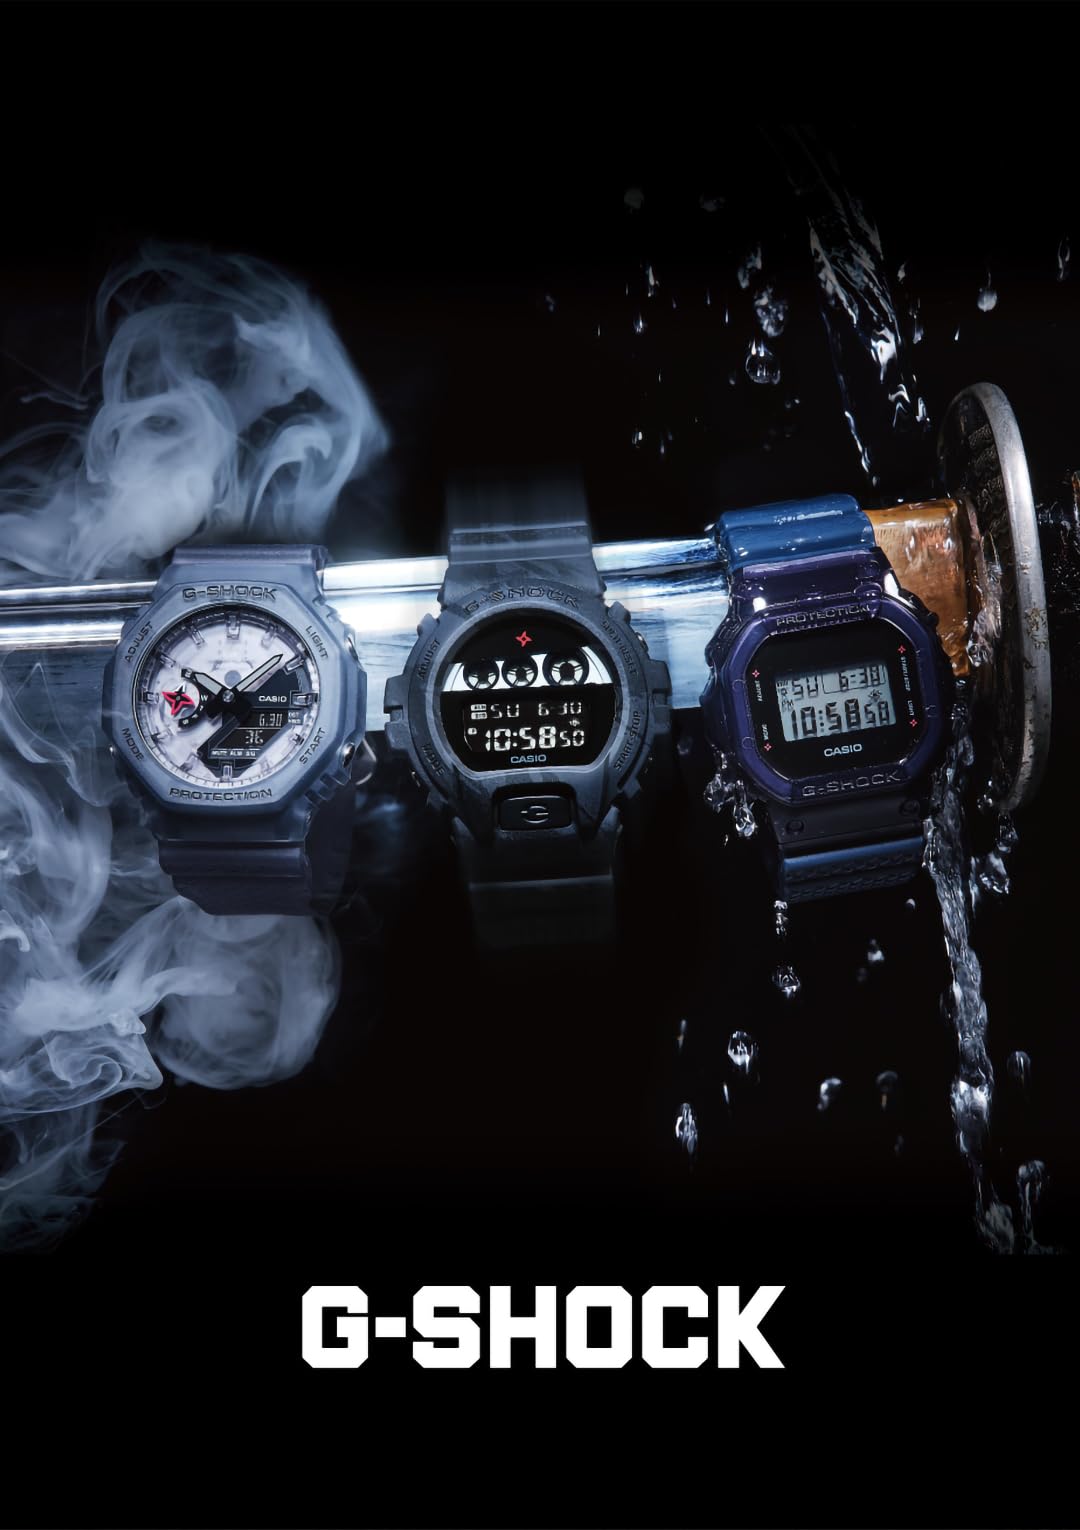 [カシオ] 腕時計 ジーショック【国内正規品】GA-2100NNJ-8AJRメンズ グレー - BanzaiHobby